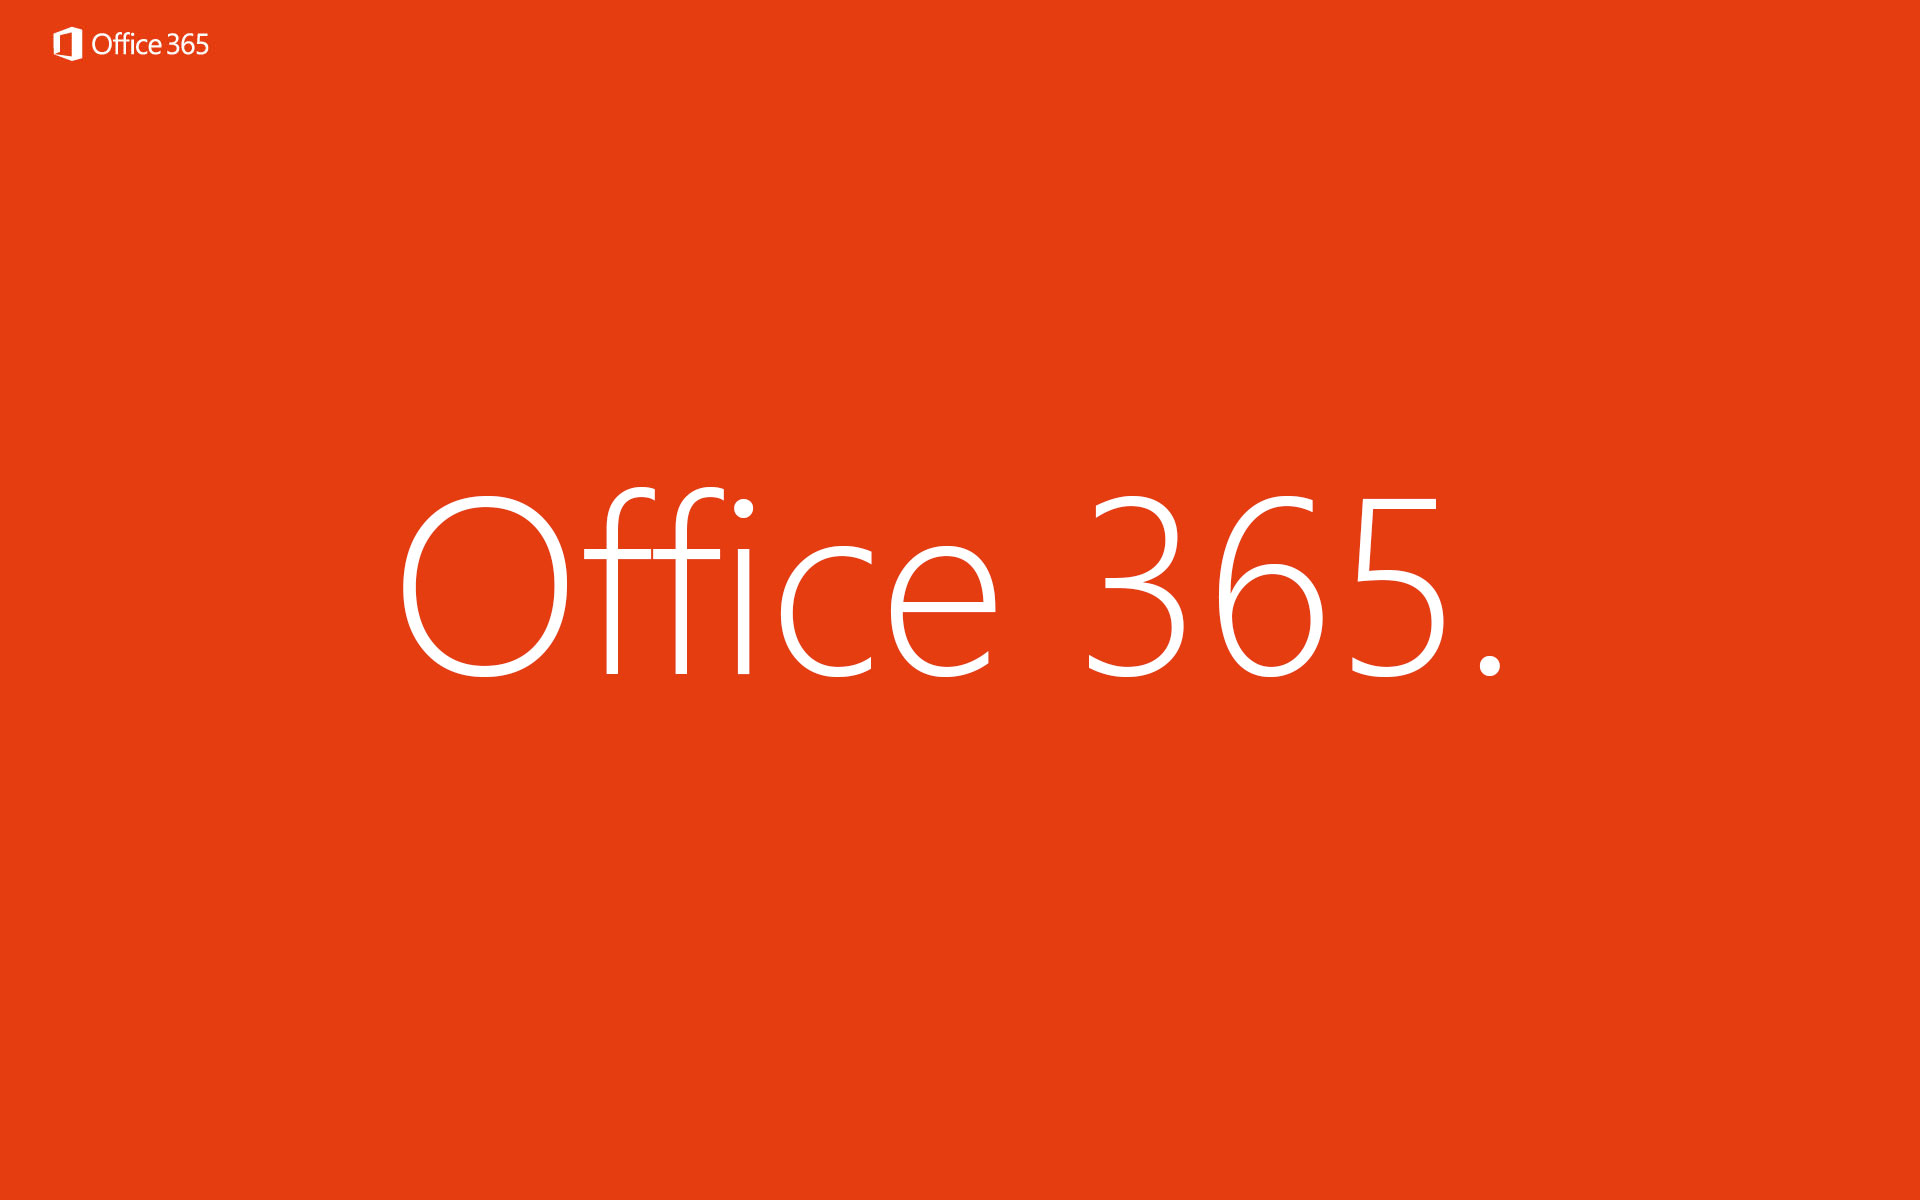 Microsoft Office Fra Idrift For Your